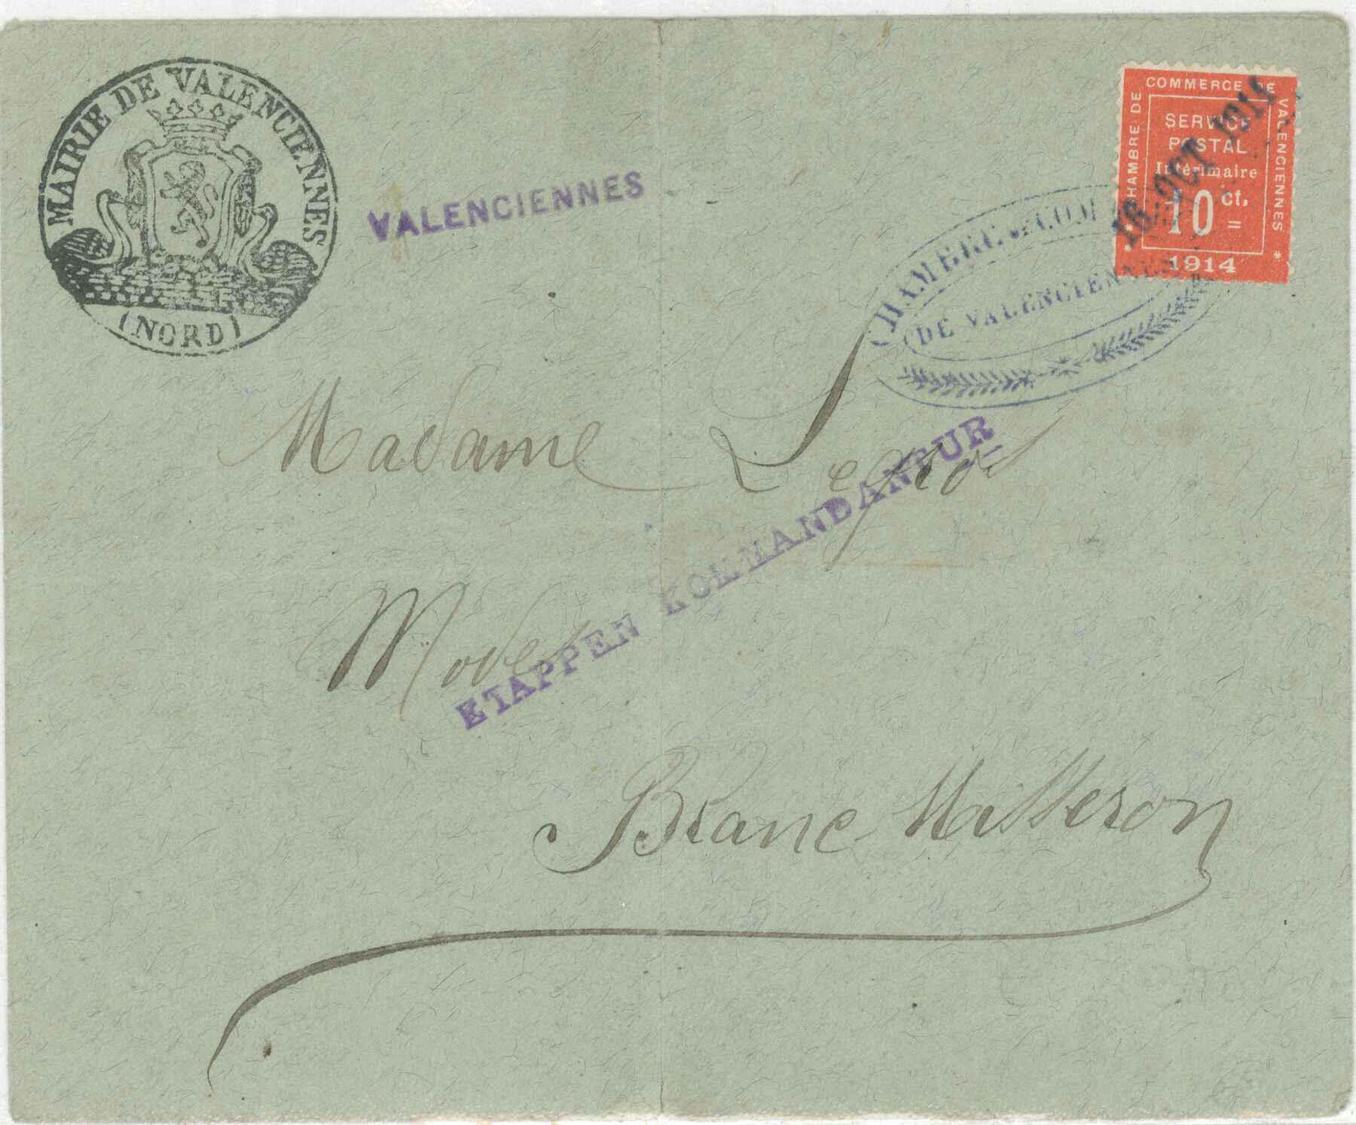 L N°1 - Valenciennes - Obl. Chbre De Commerce - 16/10/14 + Cachet Mairie + Griffe Etappen Kommandantur - B/TB - Guerre (timbres De)